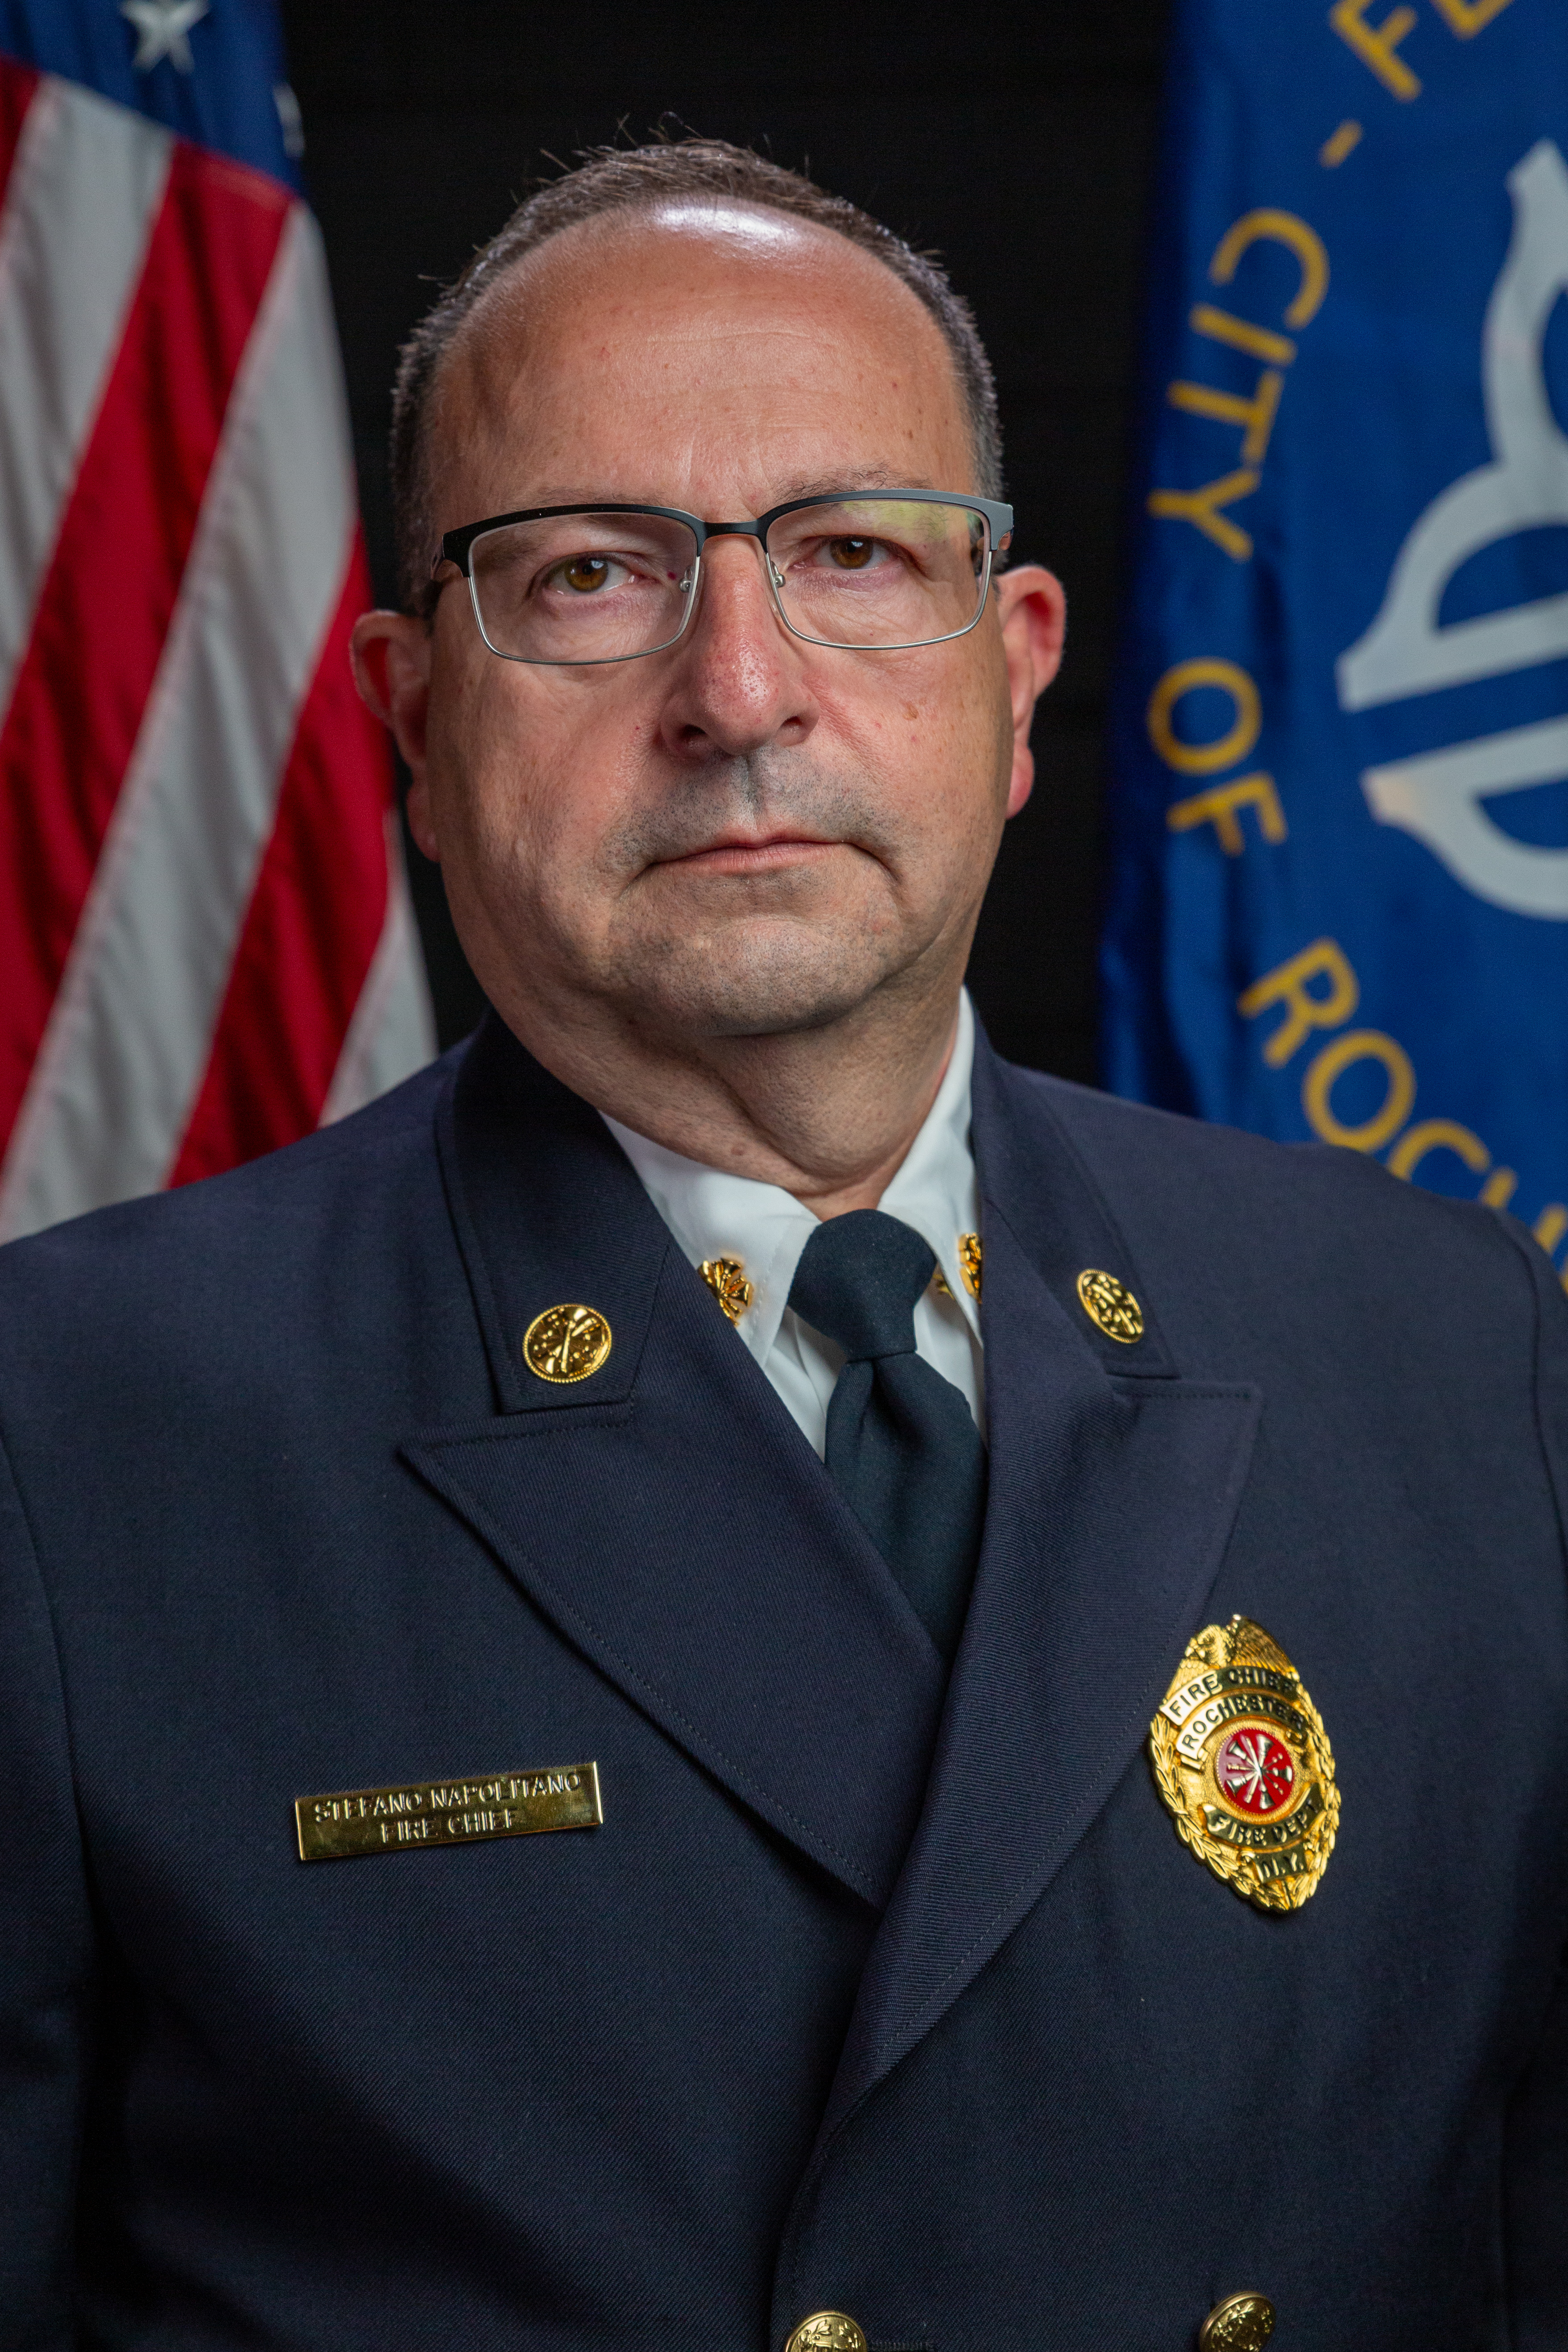 Fire Chief Stefano Napolitano